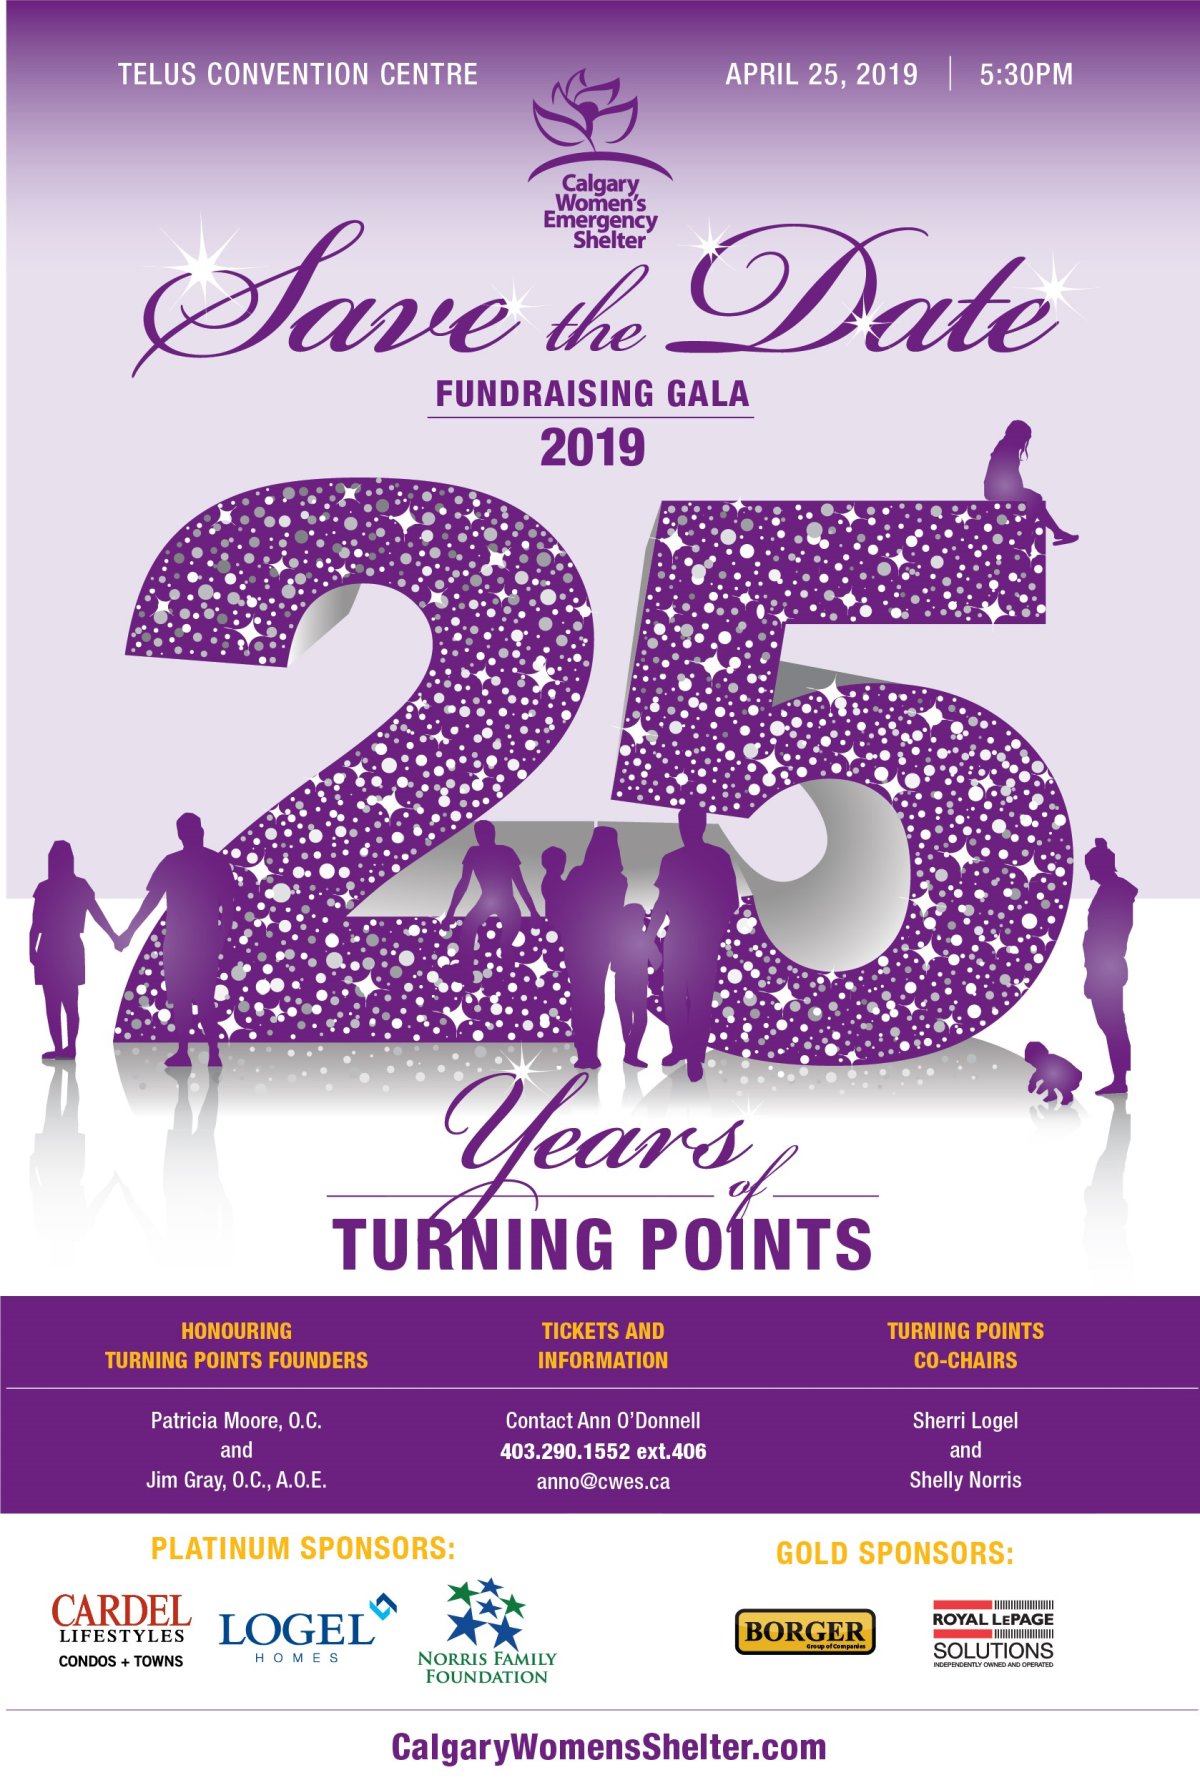 Celebrating 25 Years of Turning Points - image